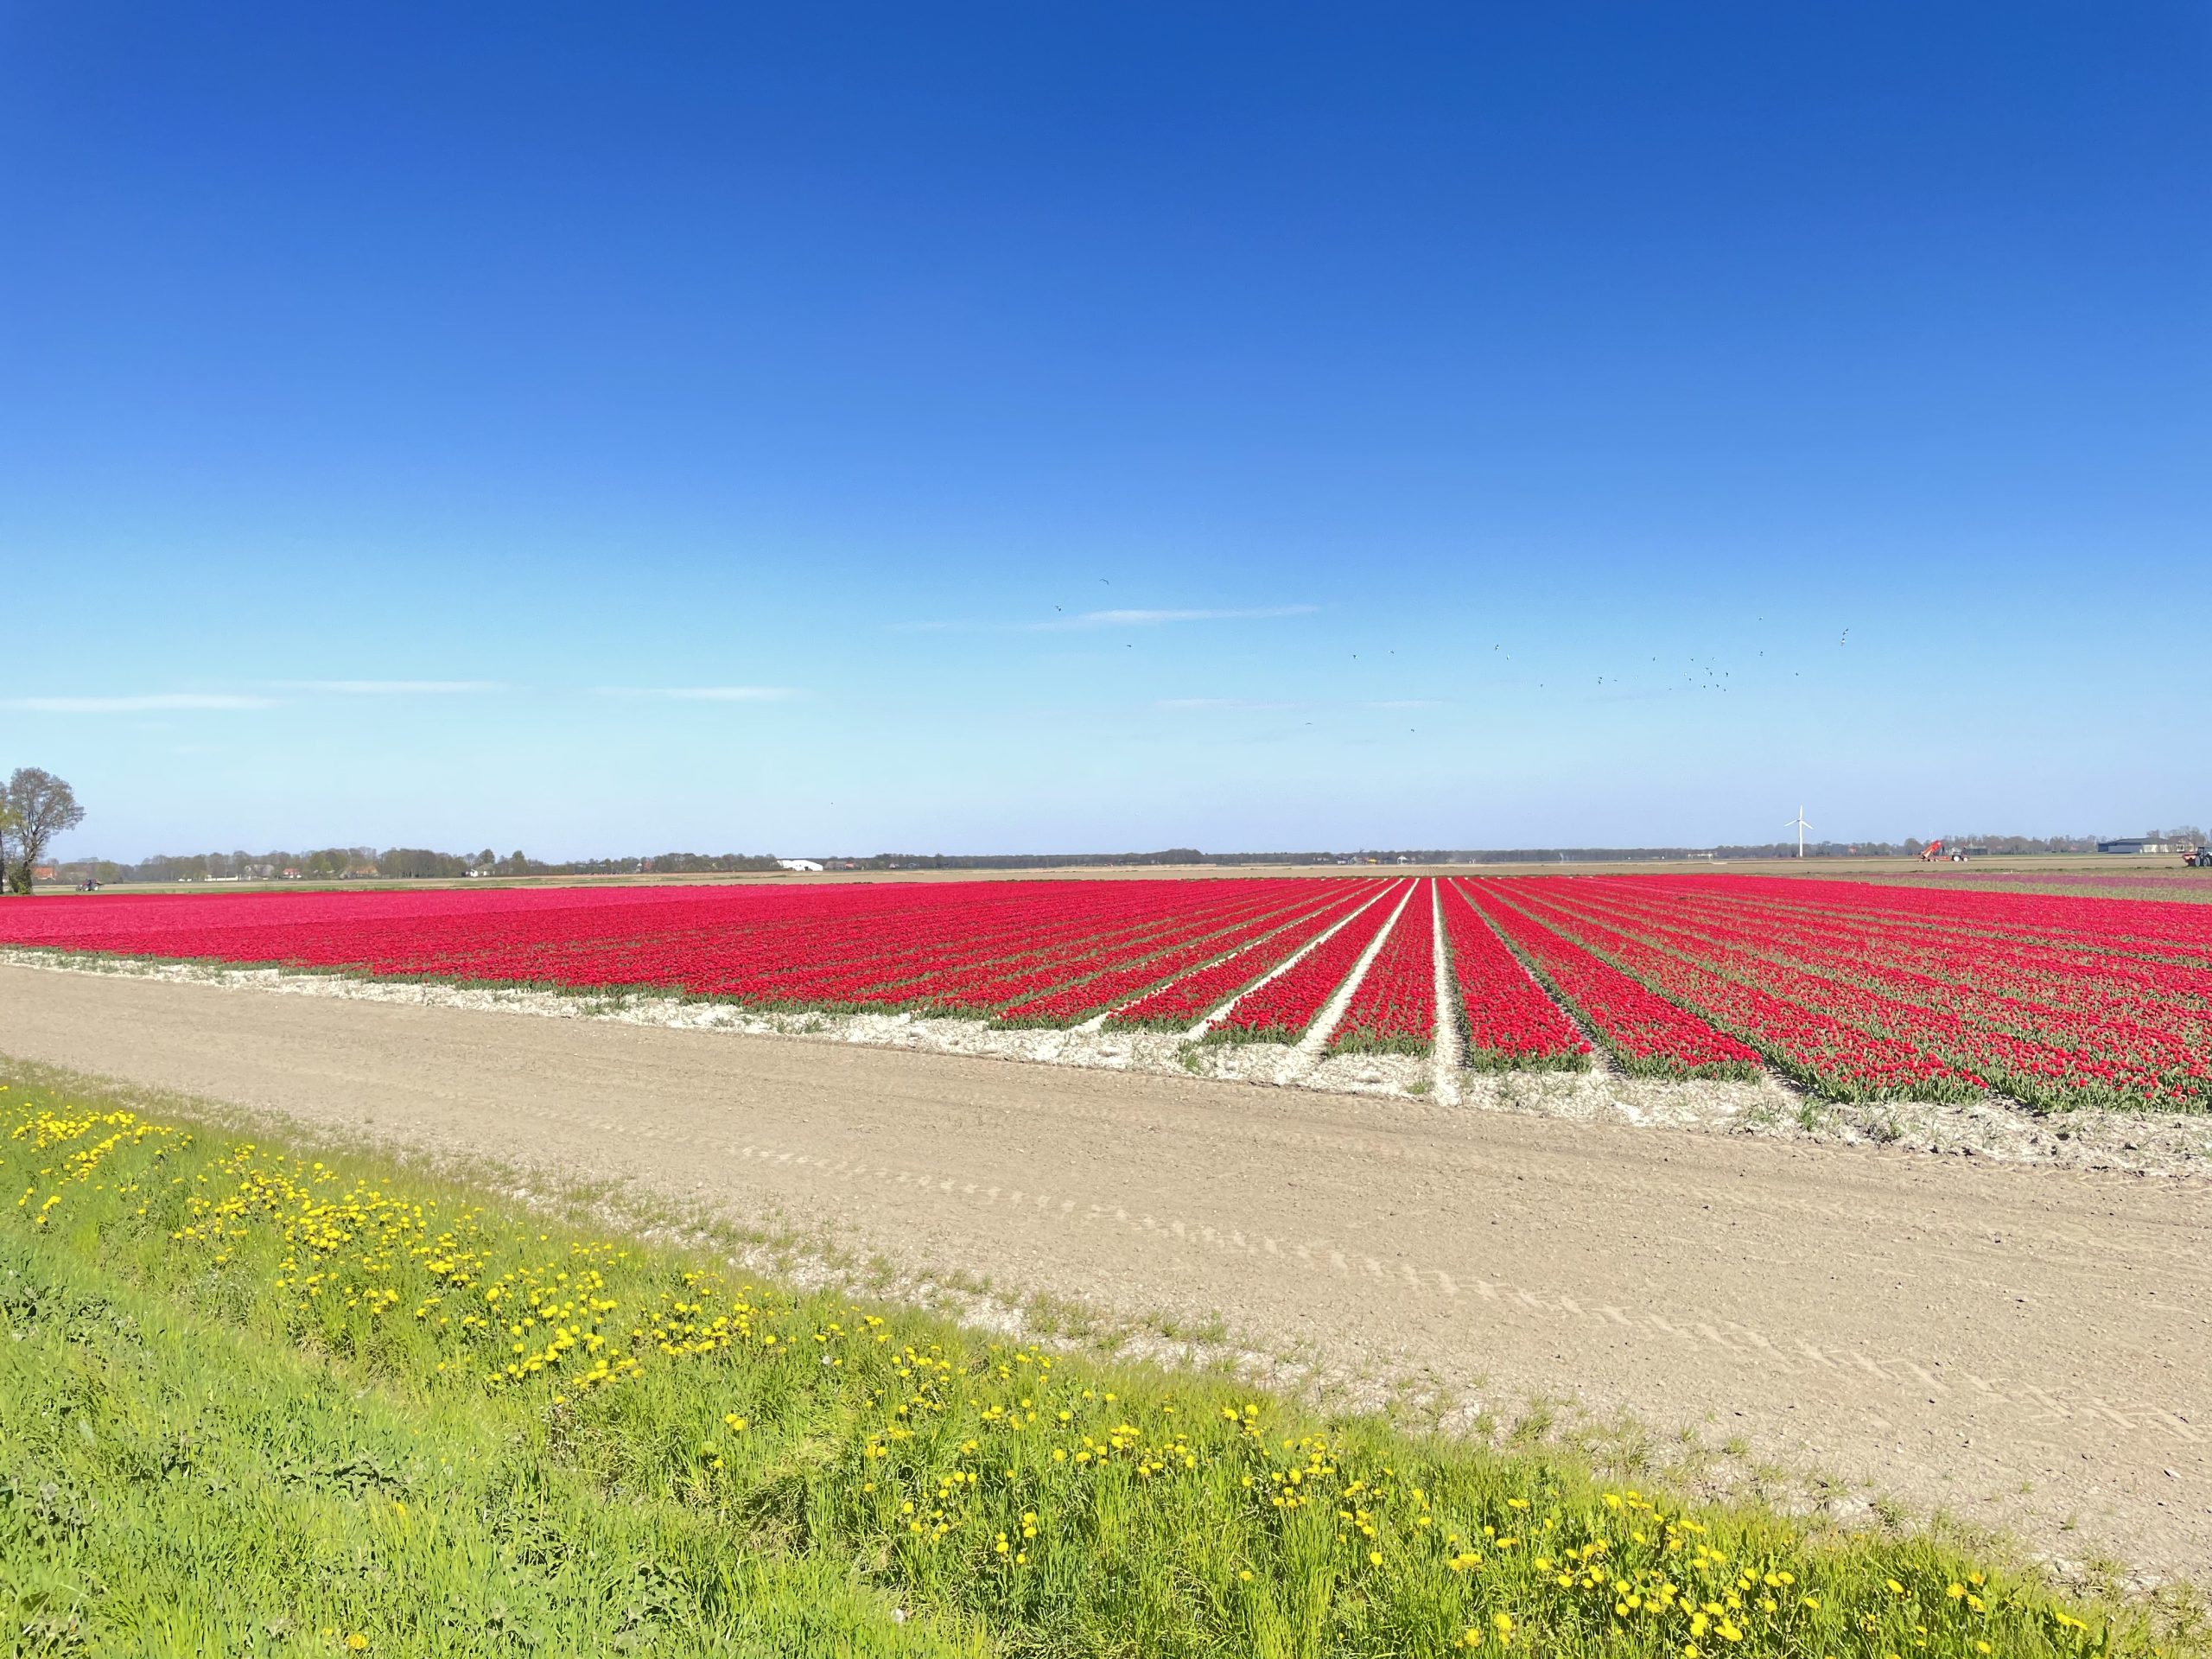 tulip-fields